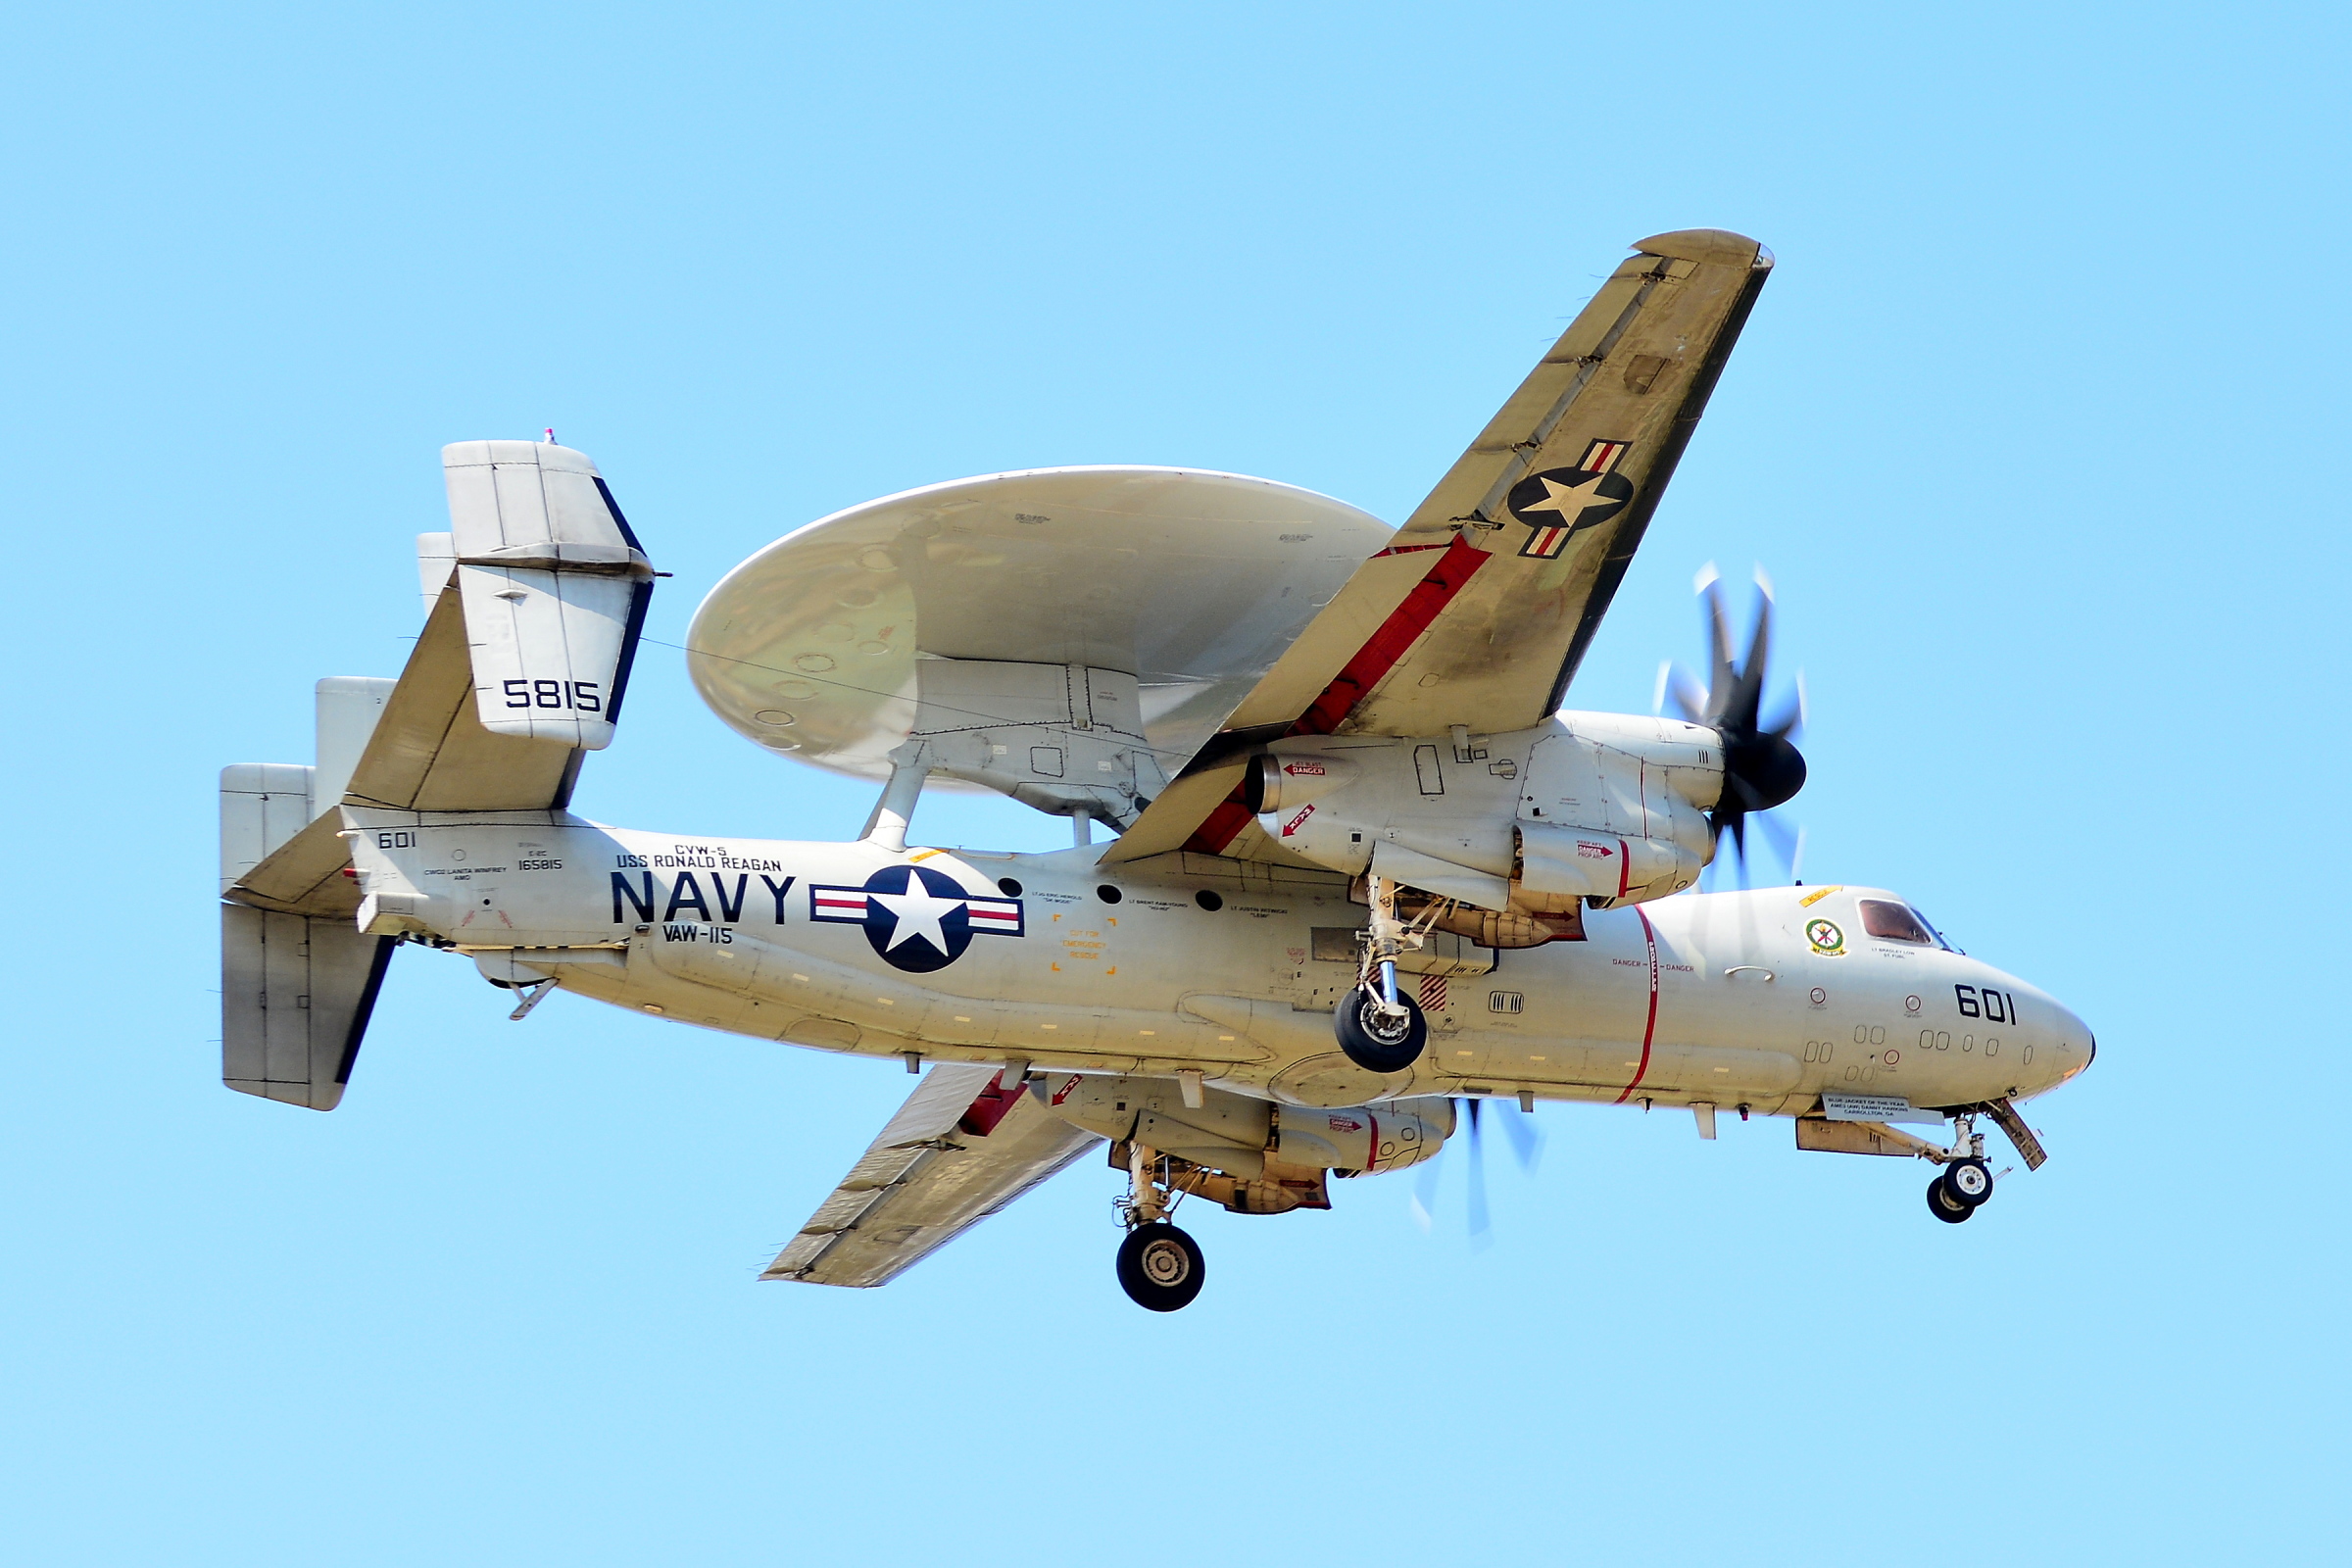 私は飛行機が好きだ＞米軍厚木基地に行きました | わたしのブログ